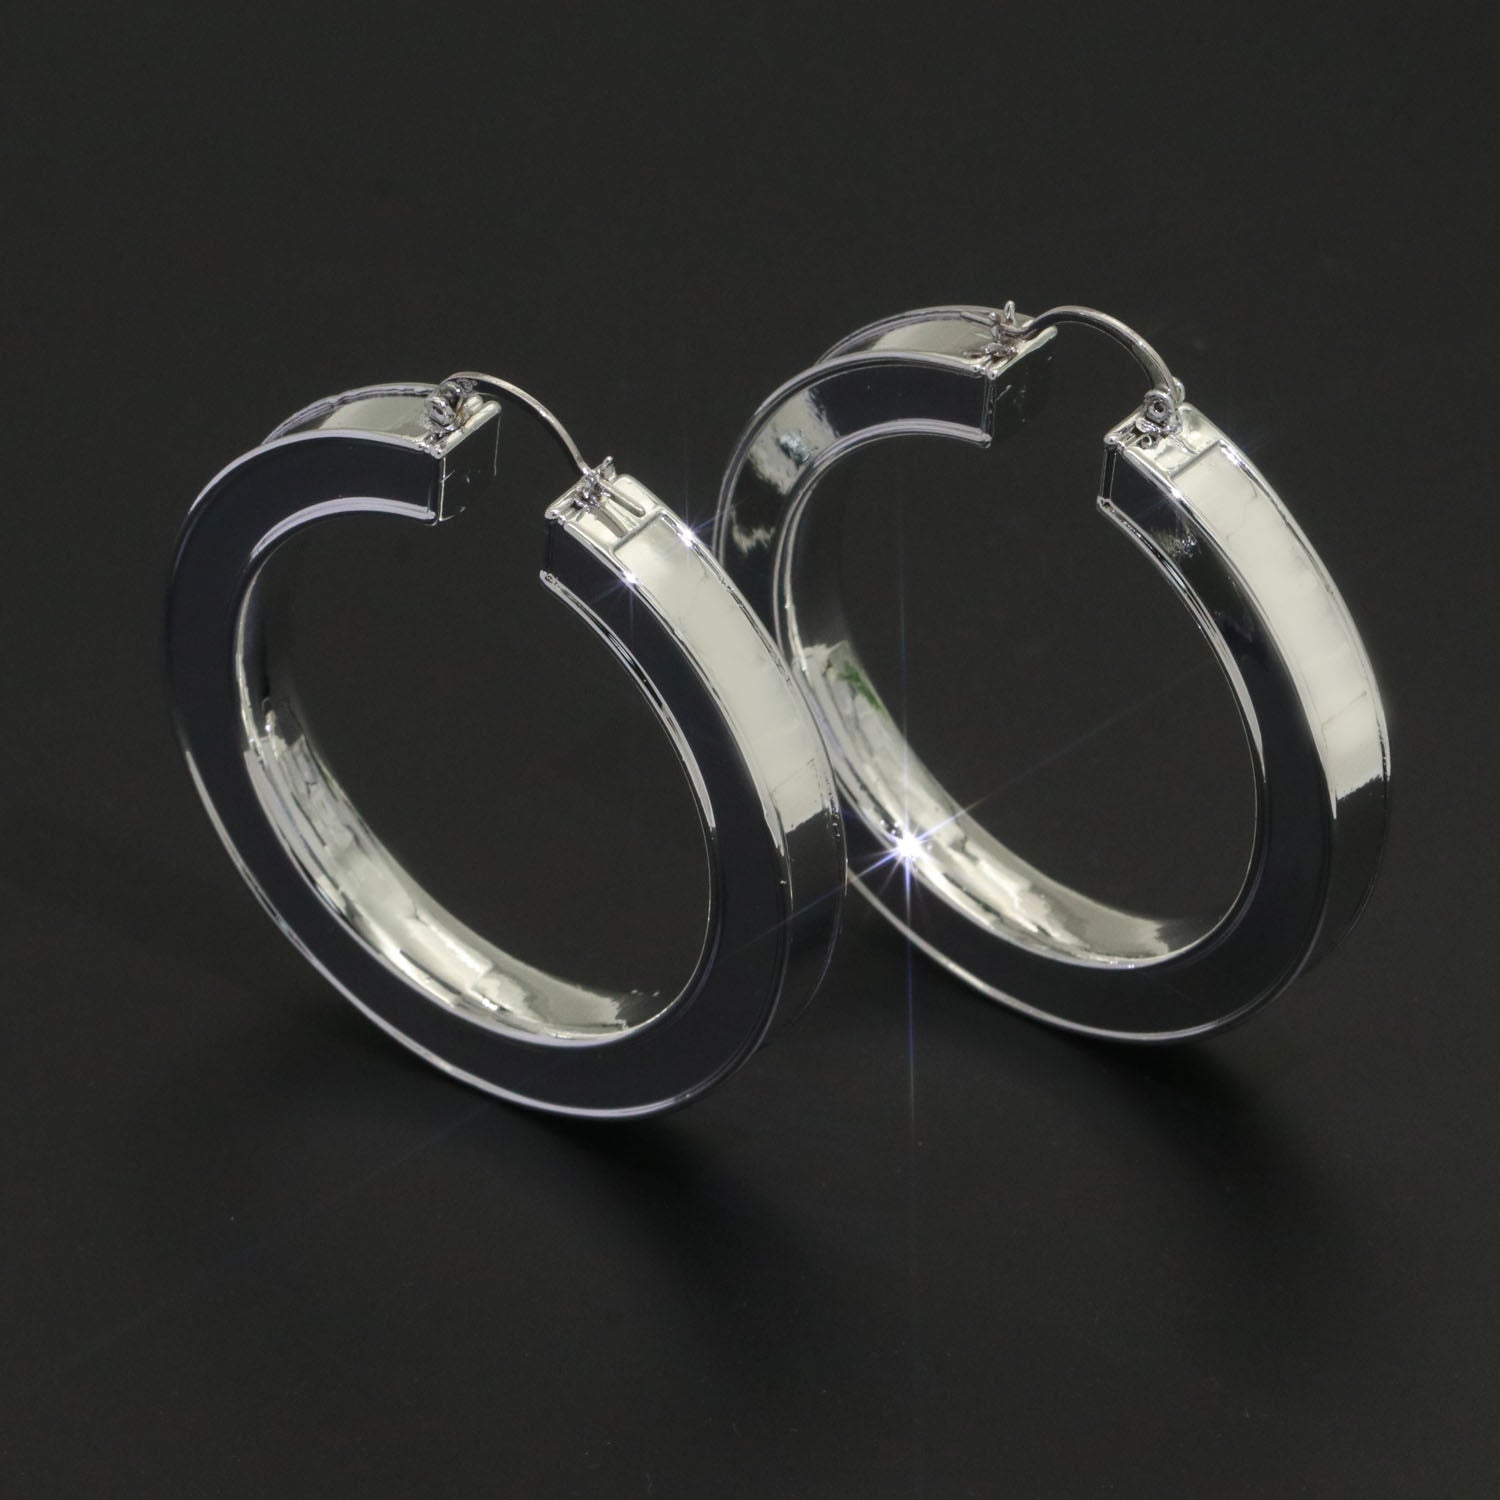 White enamel hoop earrings Silver 62mm hoops Trend Fashion jewelry - DLUXCA